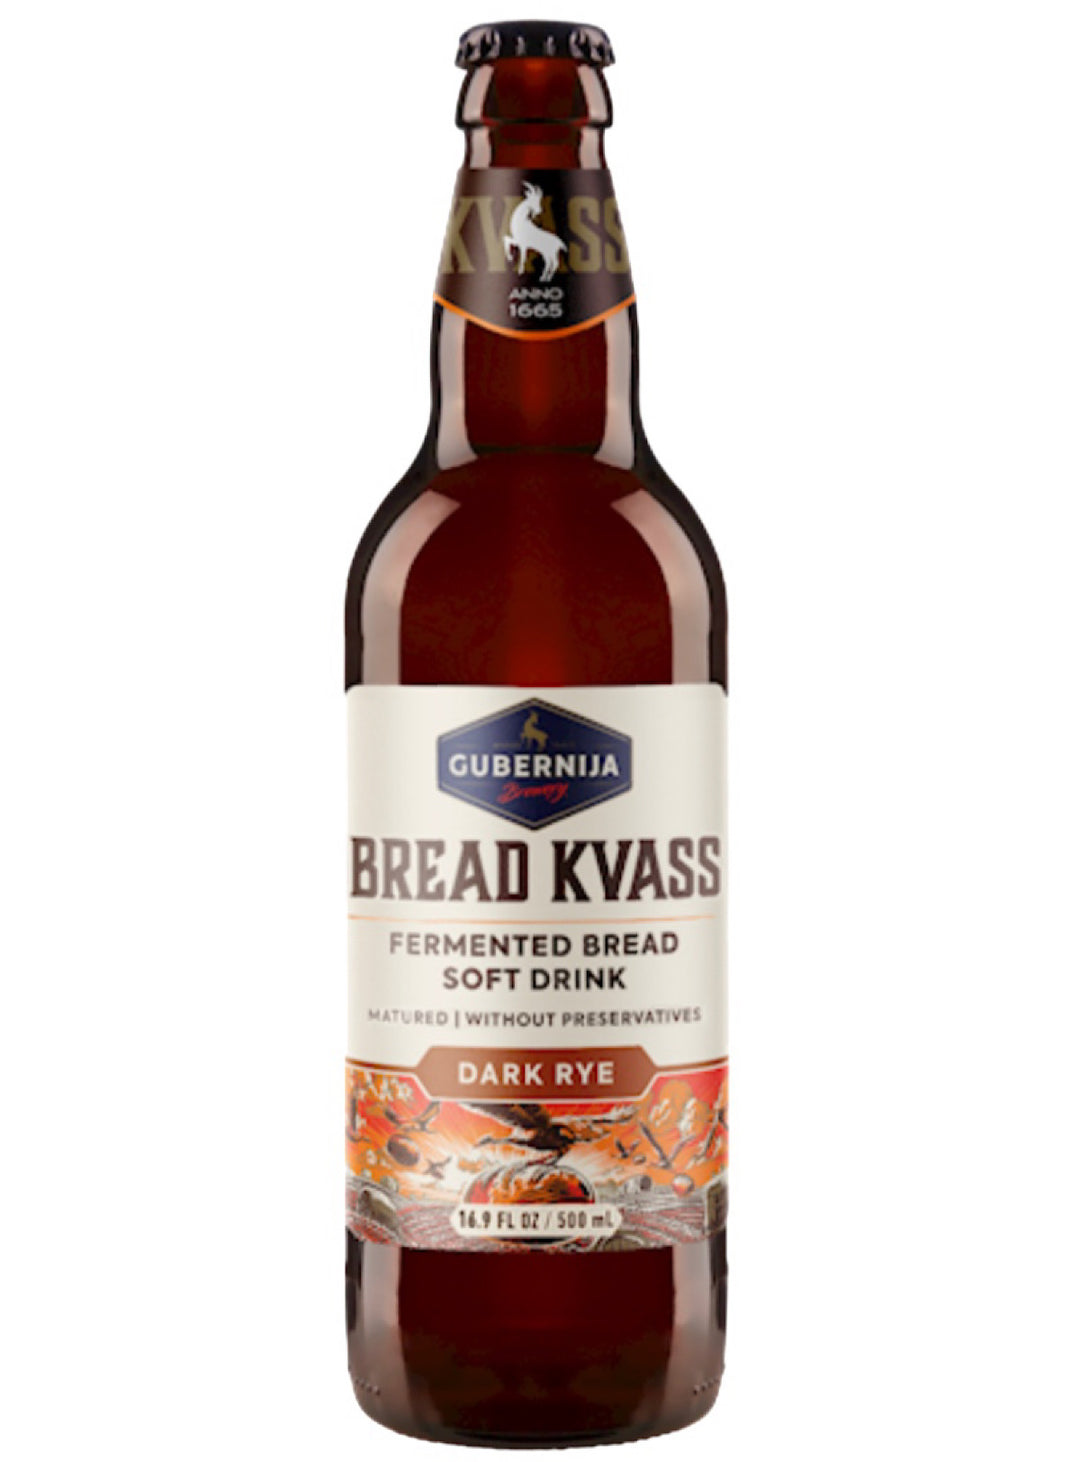 English Bread Kvass - Gubernija - 500ml (16.9fl oz)